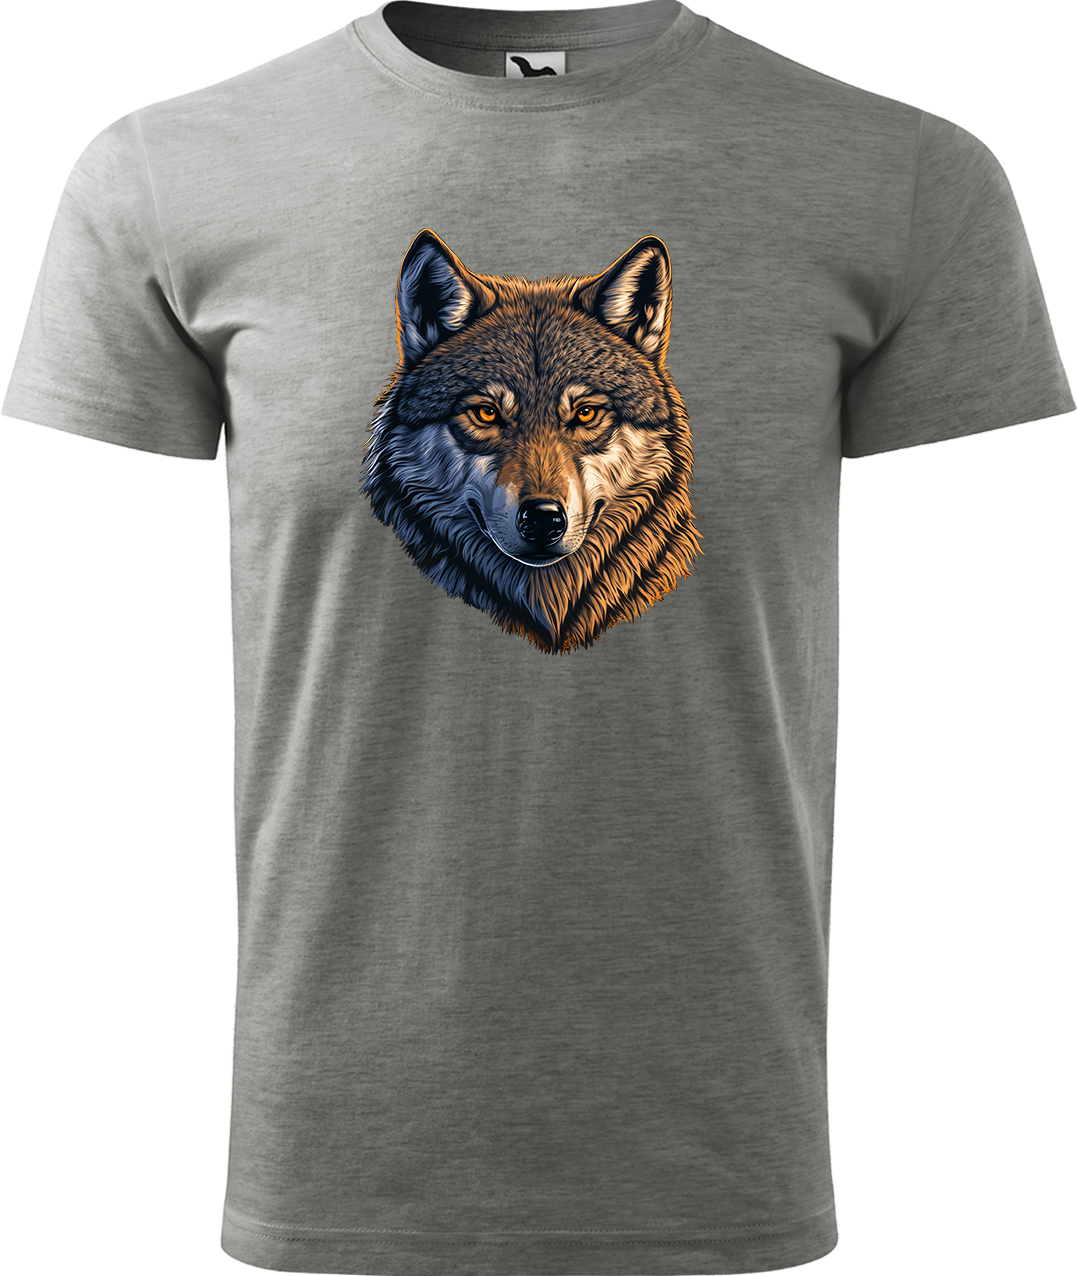 Pánské tričko s vlkem - Hlava vlka Velikost: M, Barva: Tmavě šedý melír (12), Střih: pánský